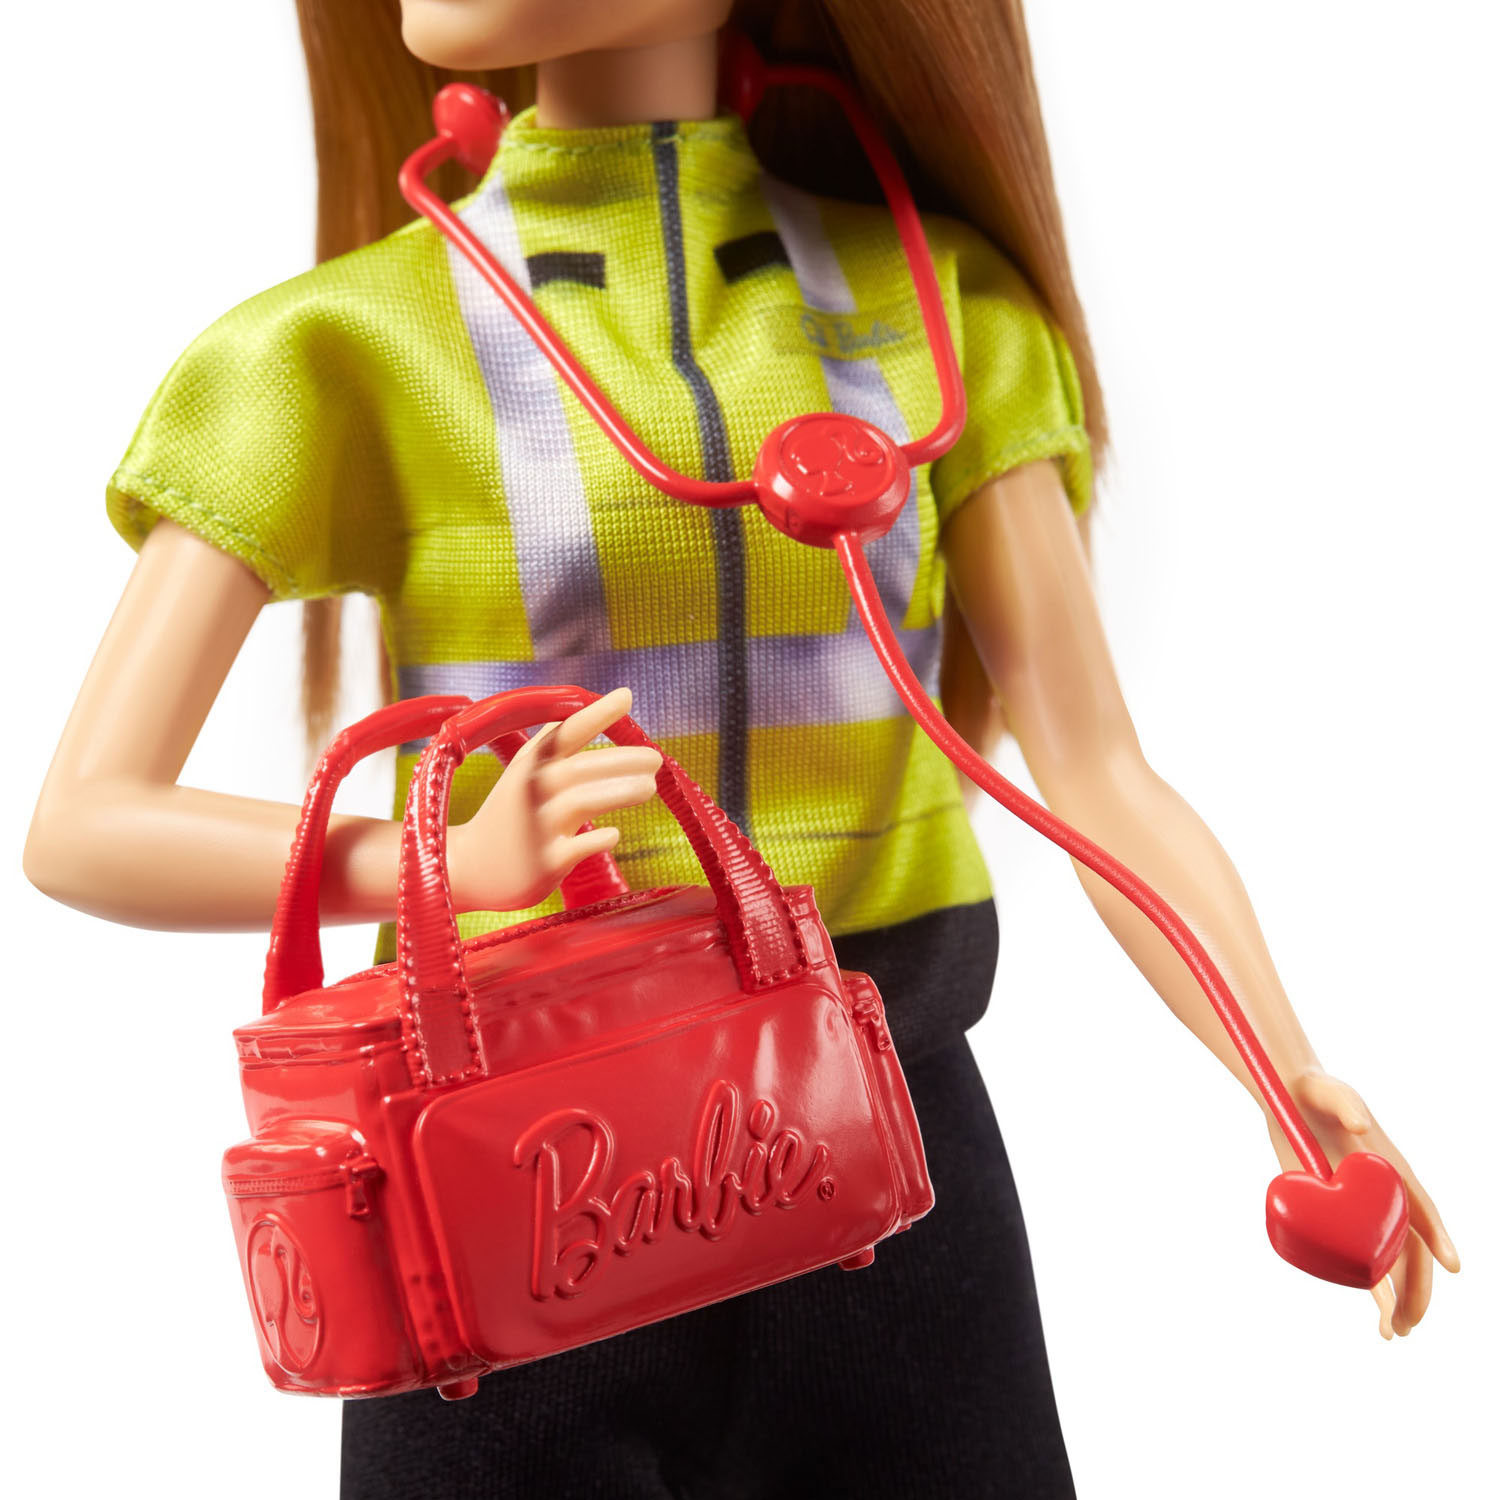 Barbie Krankenwagen-Krankenschwesterpuppe